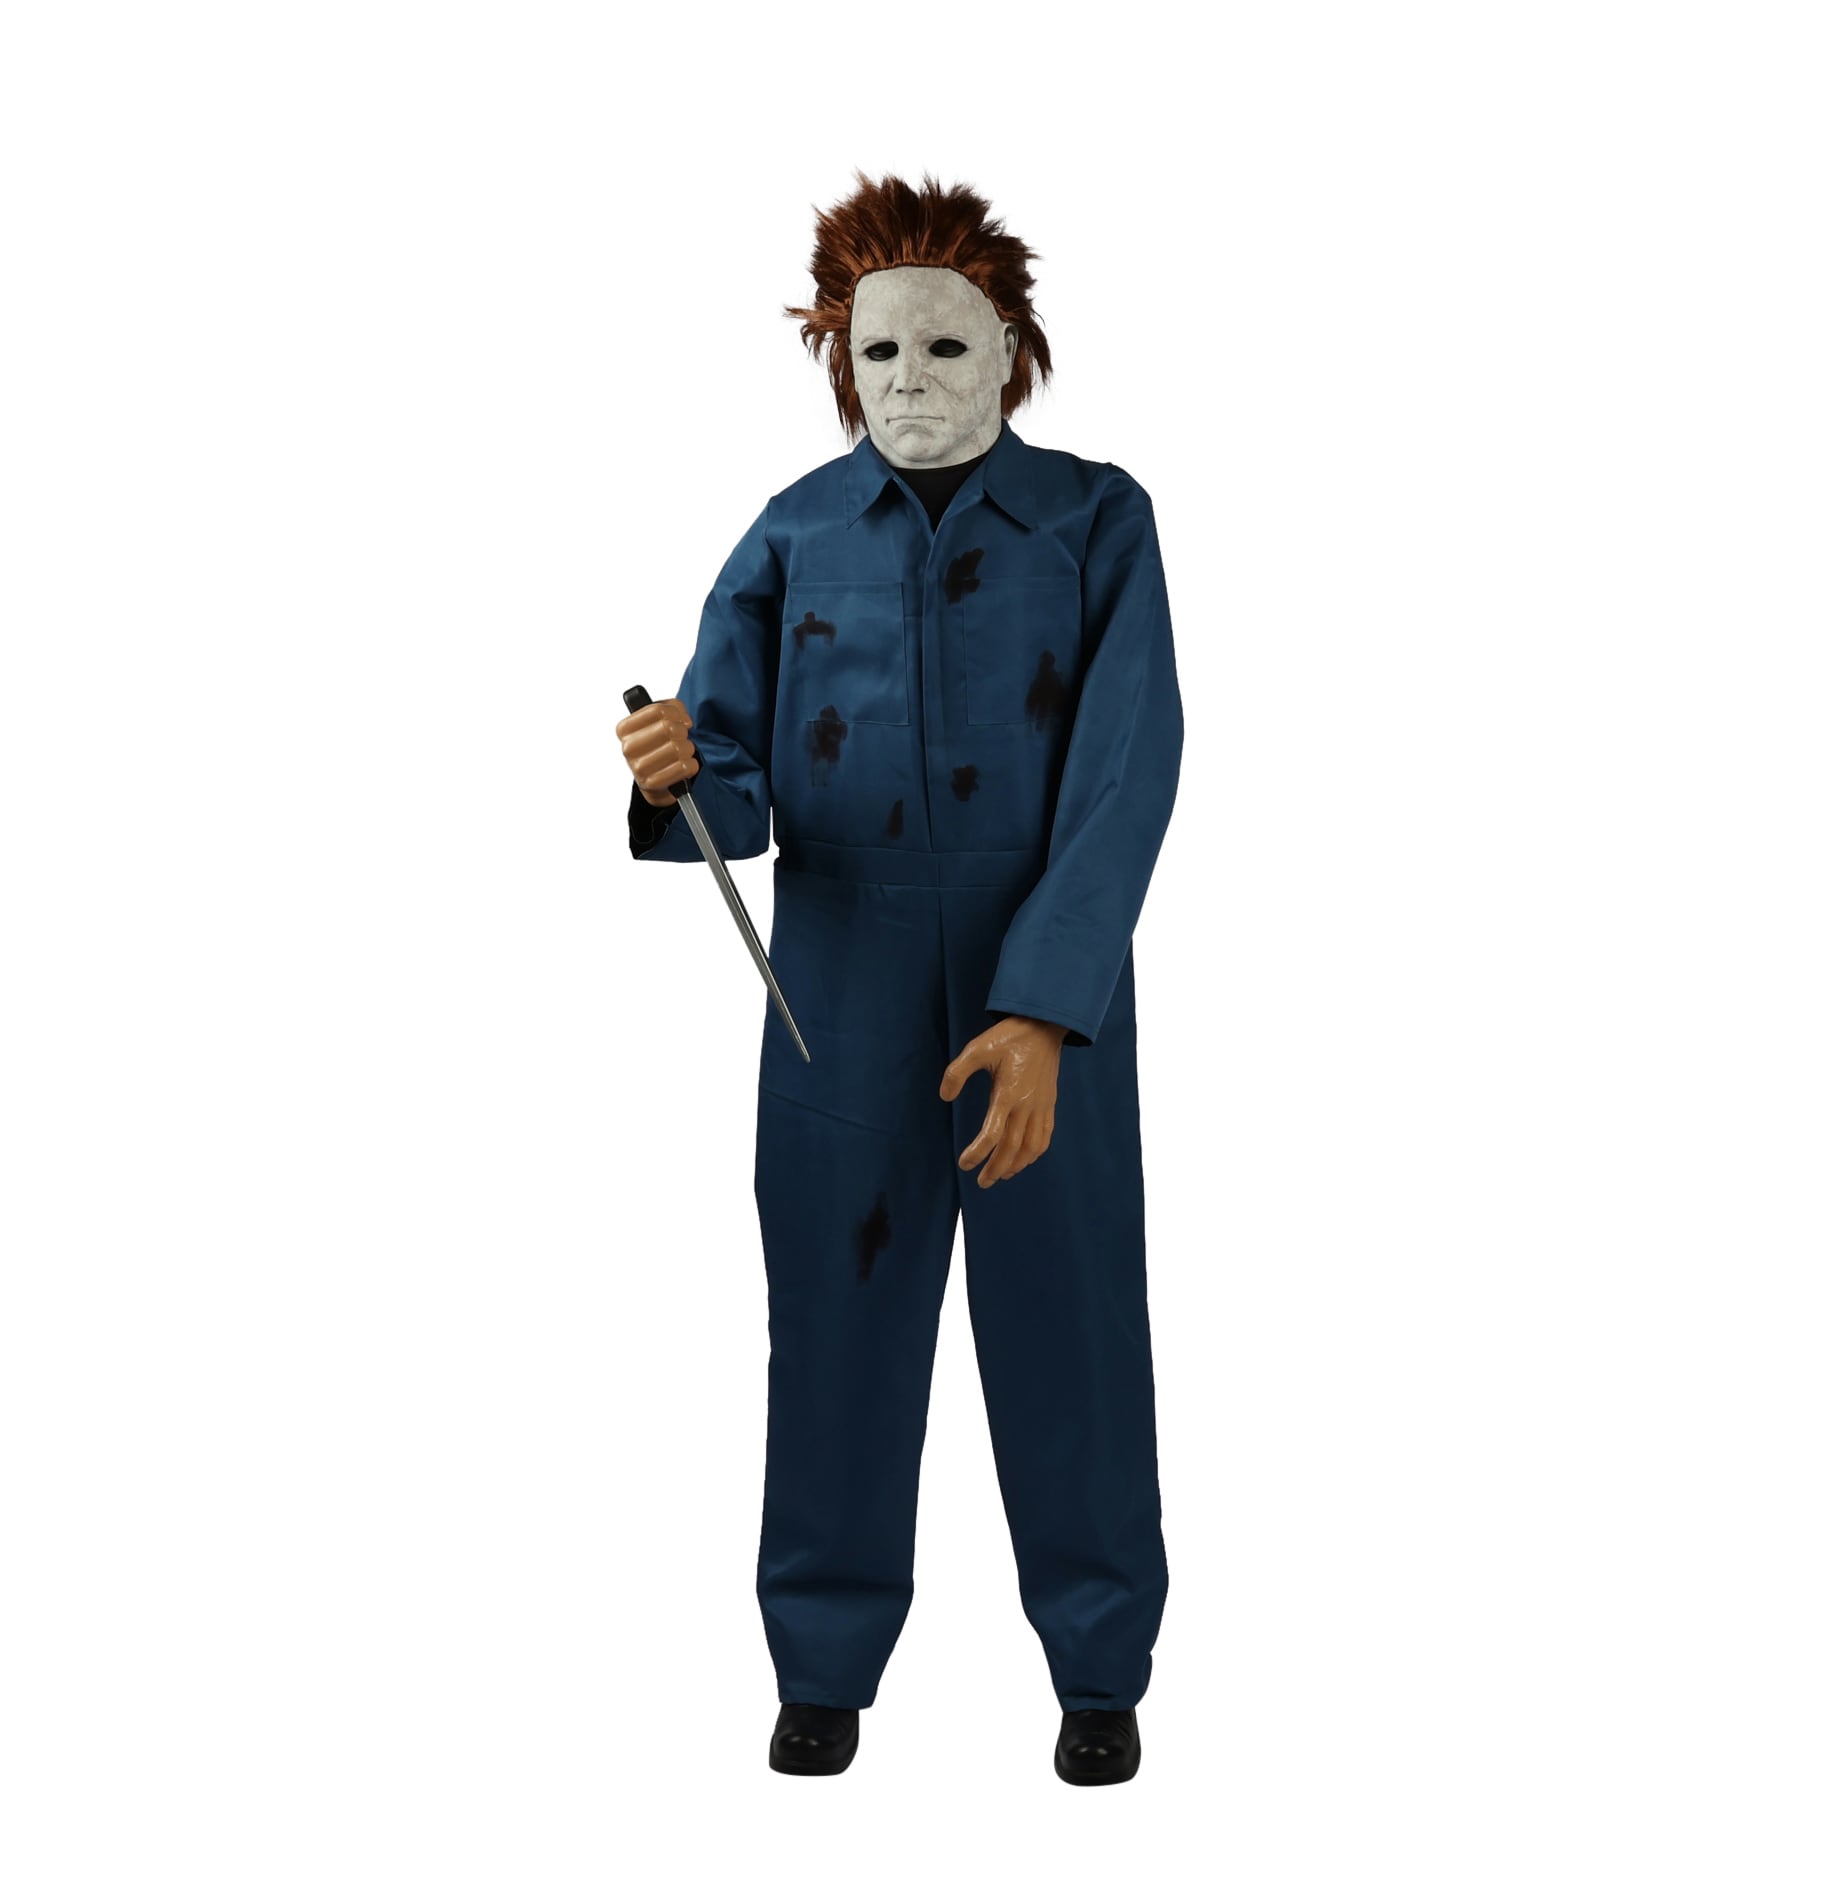 Universal 6ft Animatronic Halloween II Michael Myers in the Halloween